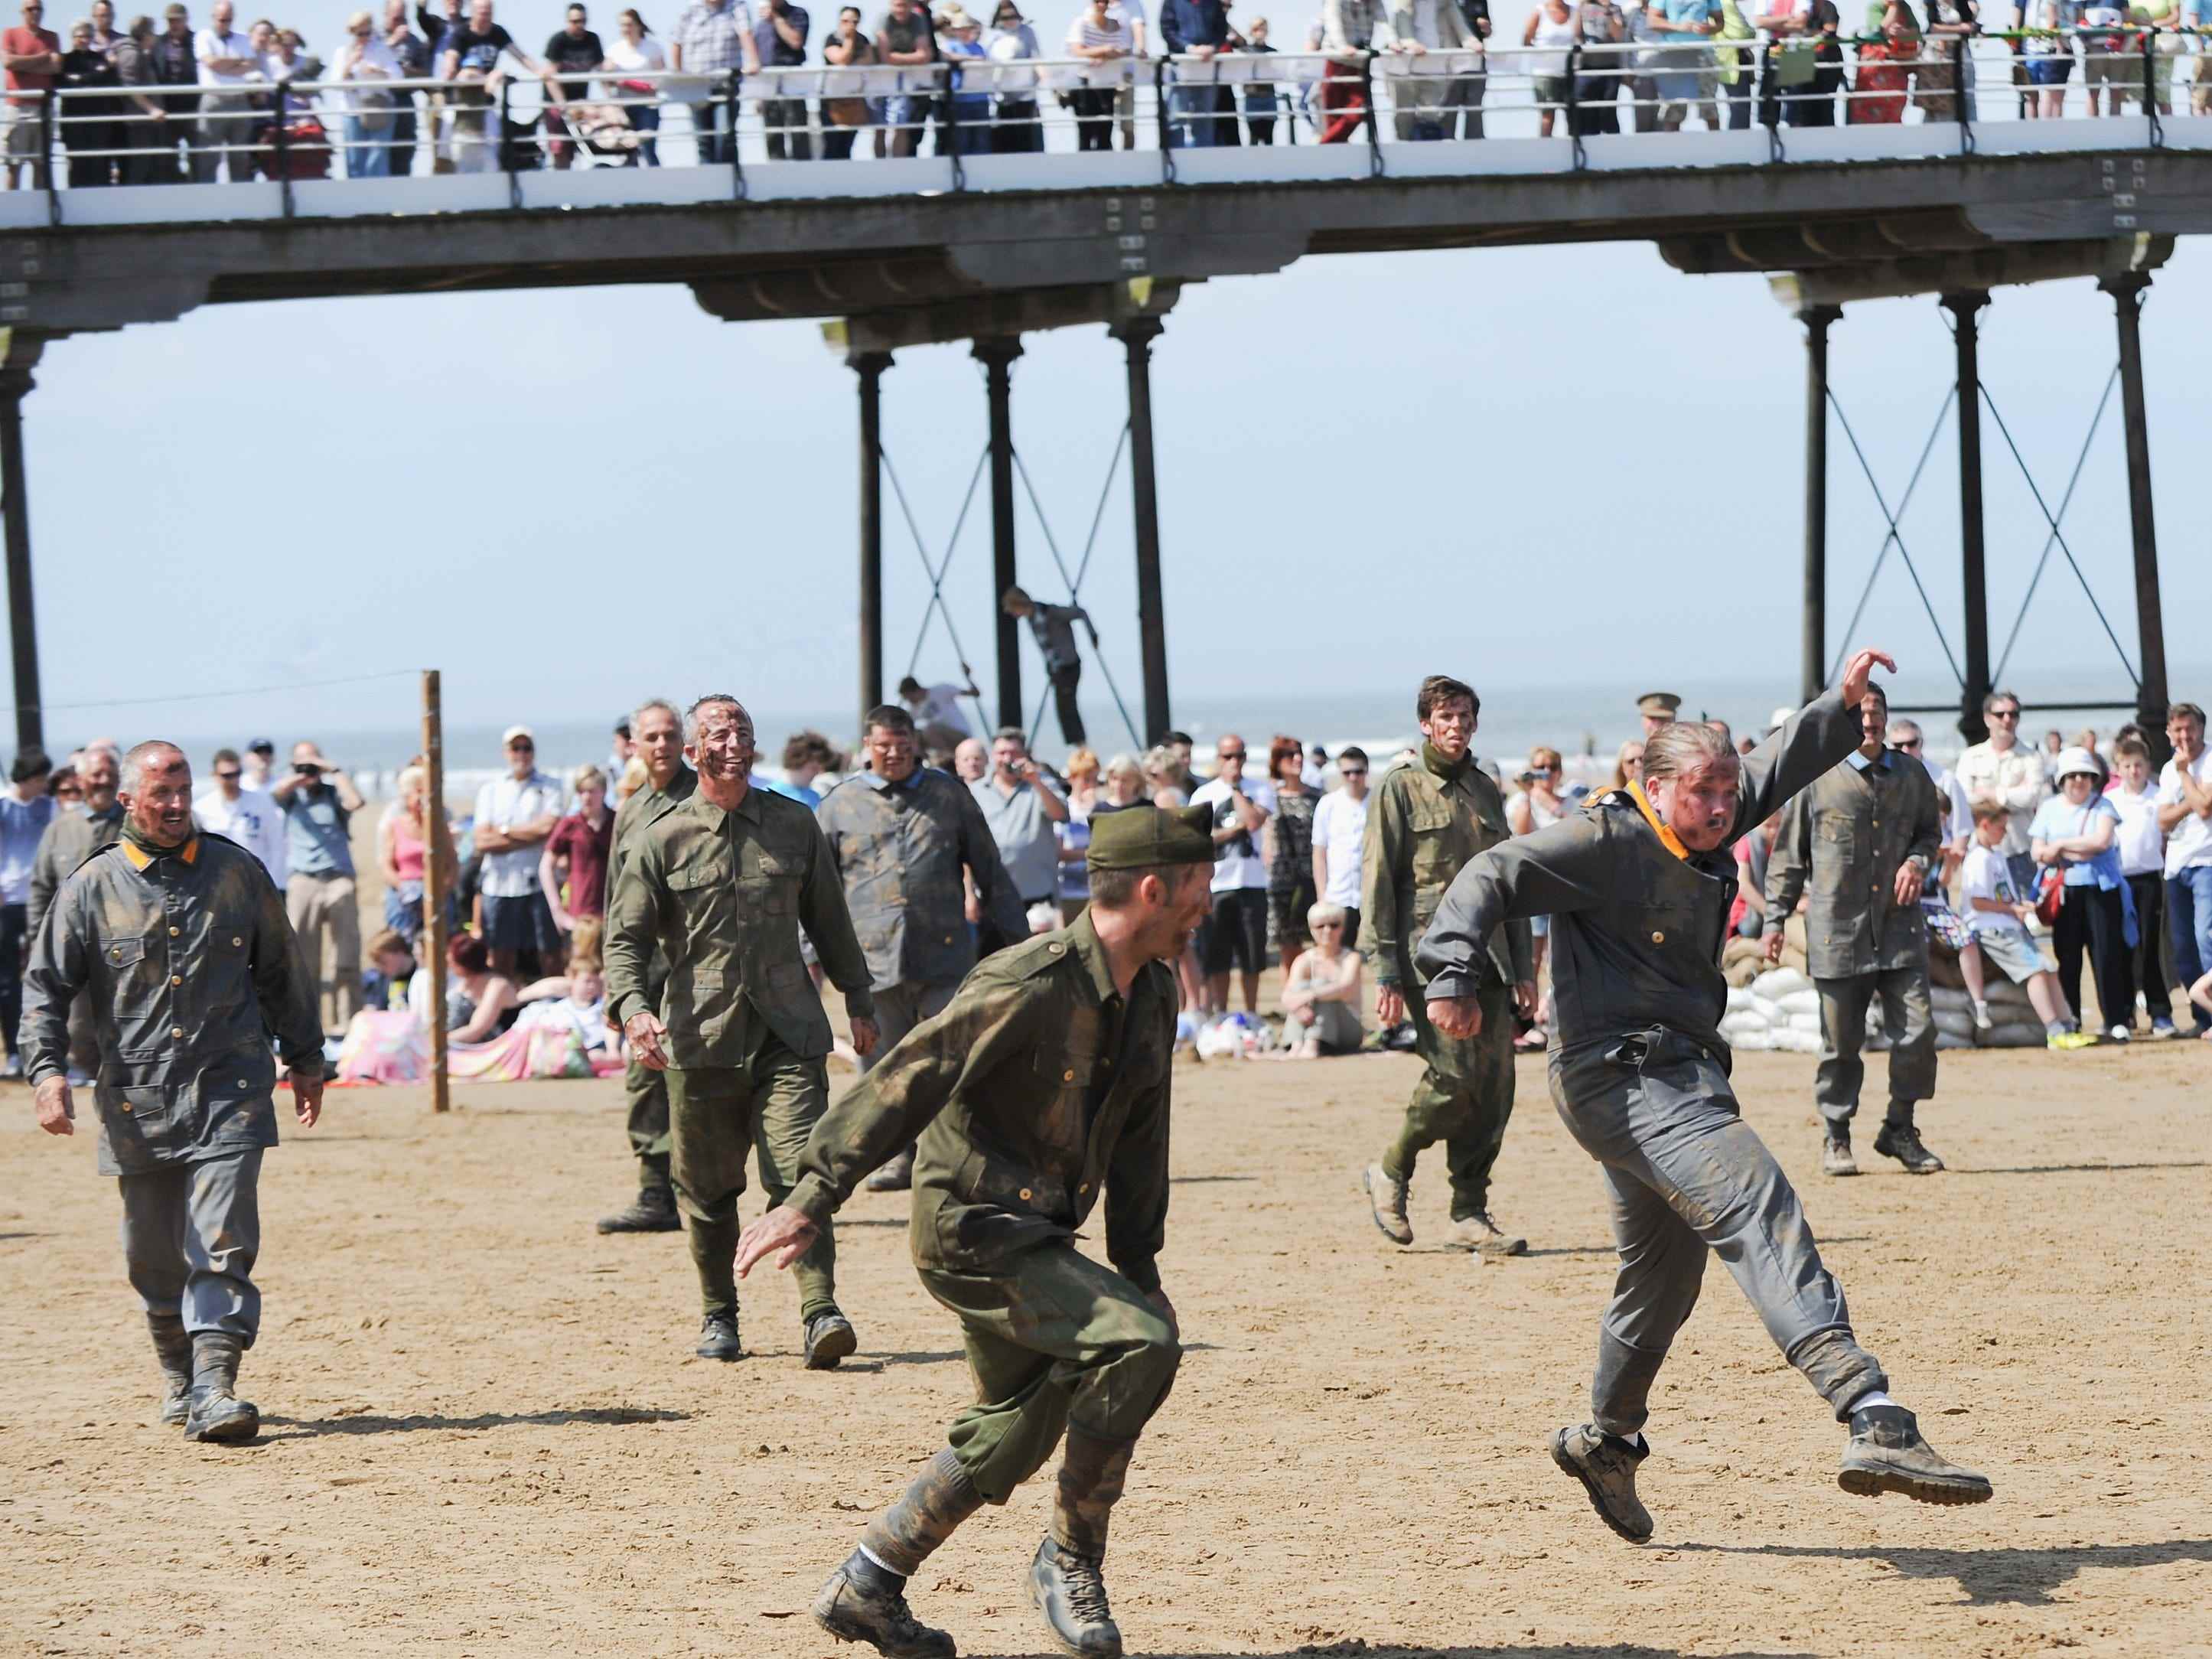 e-encators, die die britische und die deutsche Armee spielen, spielen Fußball während einer Gedenkveranstaltung, um an das Waffenstillstands-Fußballspiel des Ersten Weltkriegs am 1. Juni 2014 in Saltburn-by-the-Sea, England, zu erinnern.